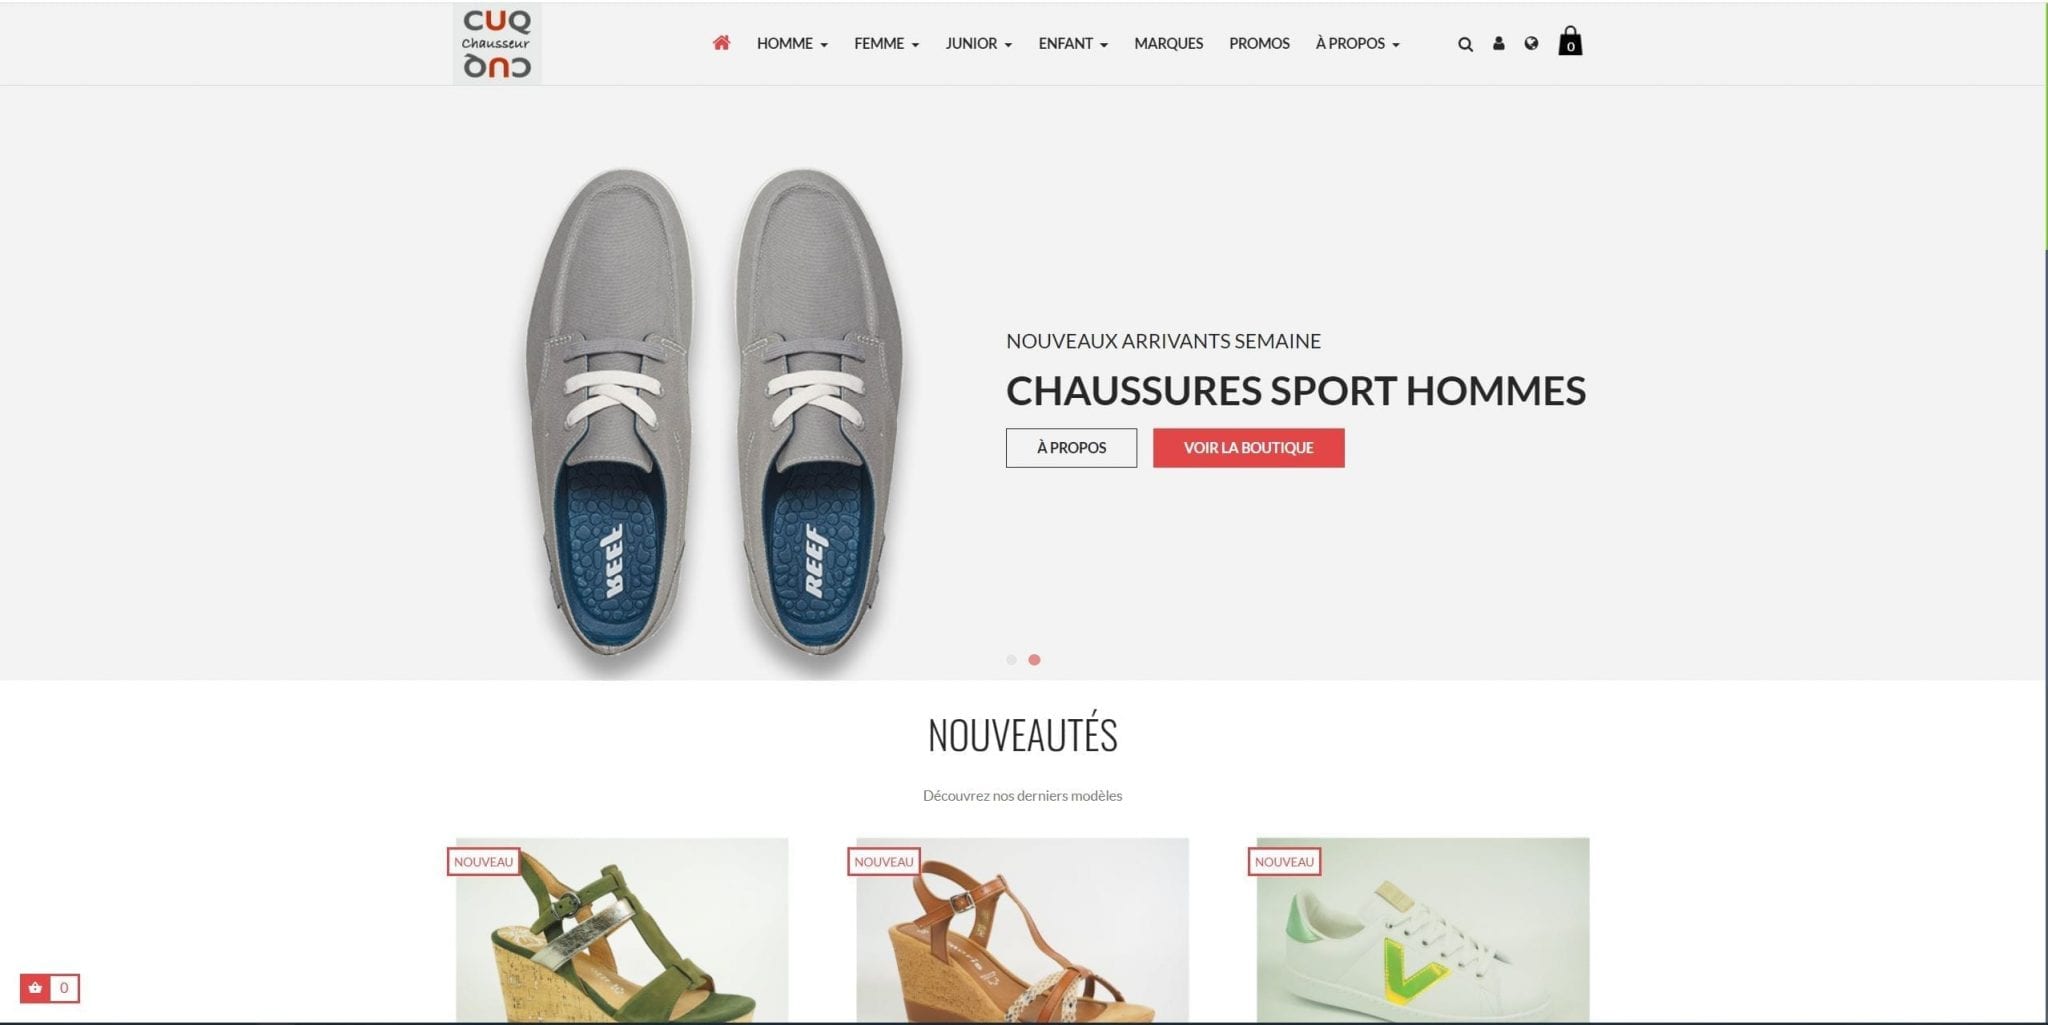 Site marchand pour vendre des chaussures pour Cuq chausseur à Millau, Villefranche de Rouergue et Albi